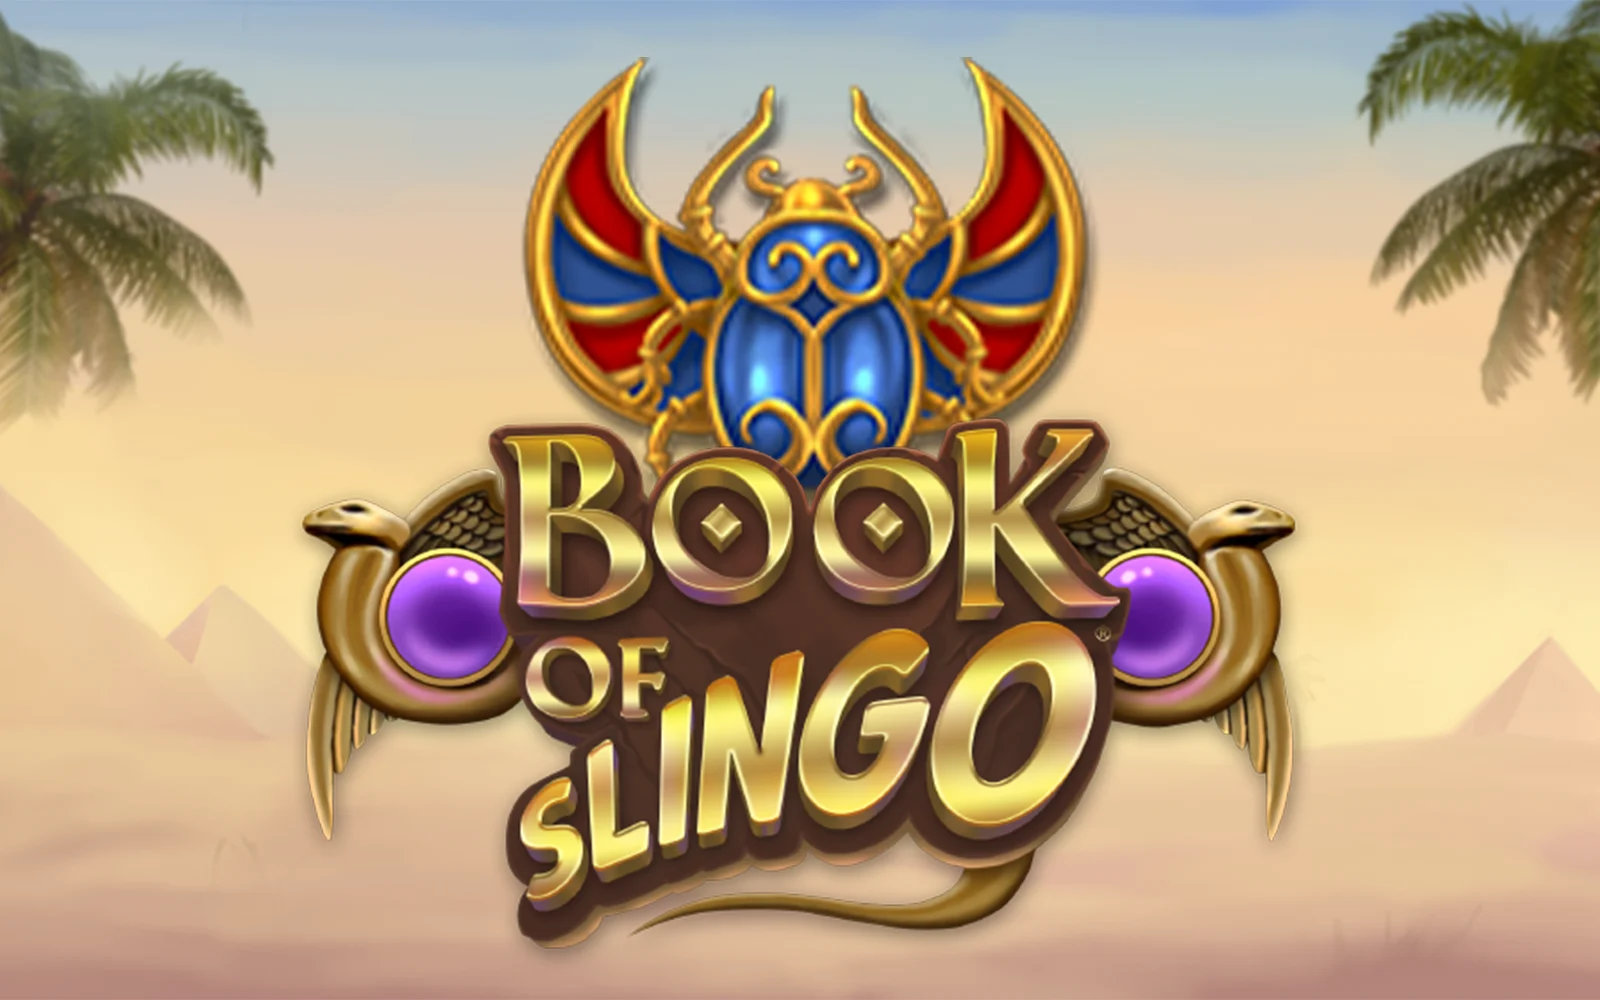 Jogue Book of Slingo no casino online Starcasino.be 